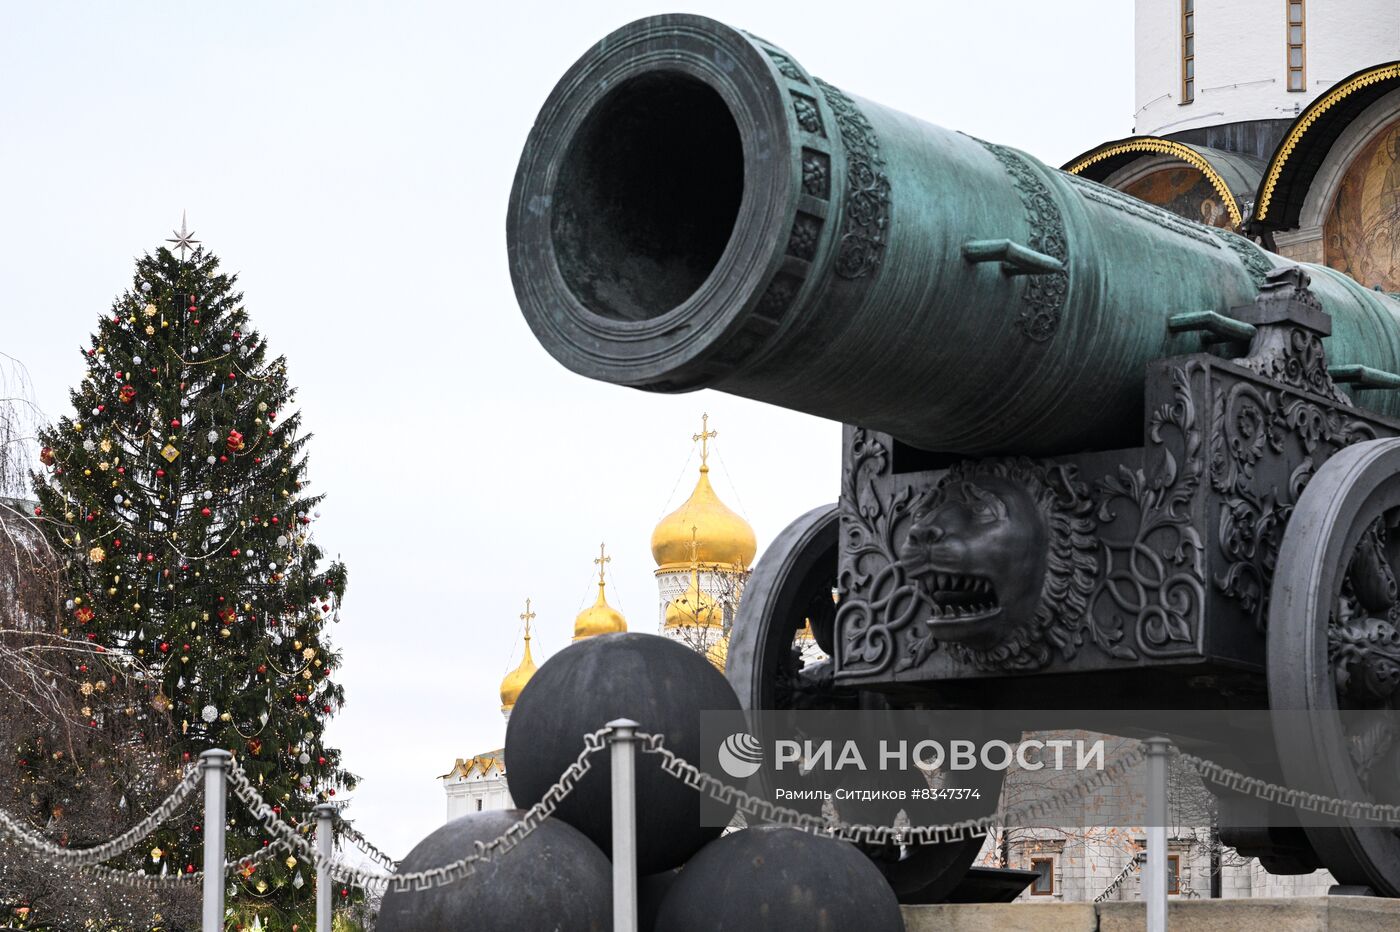 Новогодняя елка на Соборной площади Кремля 